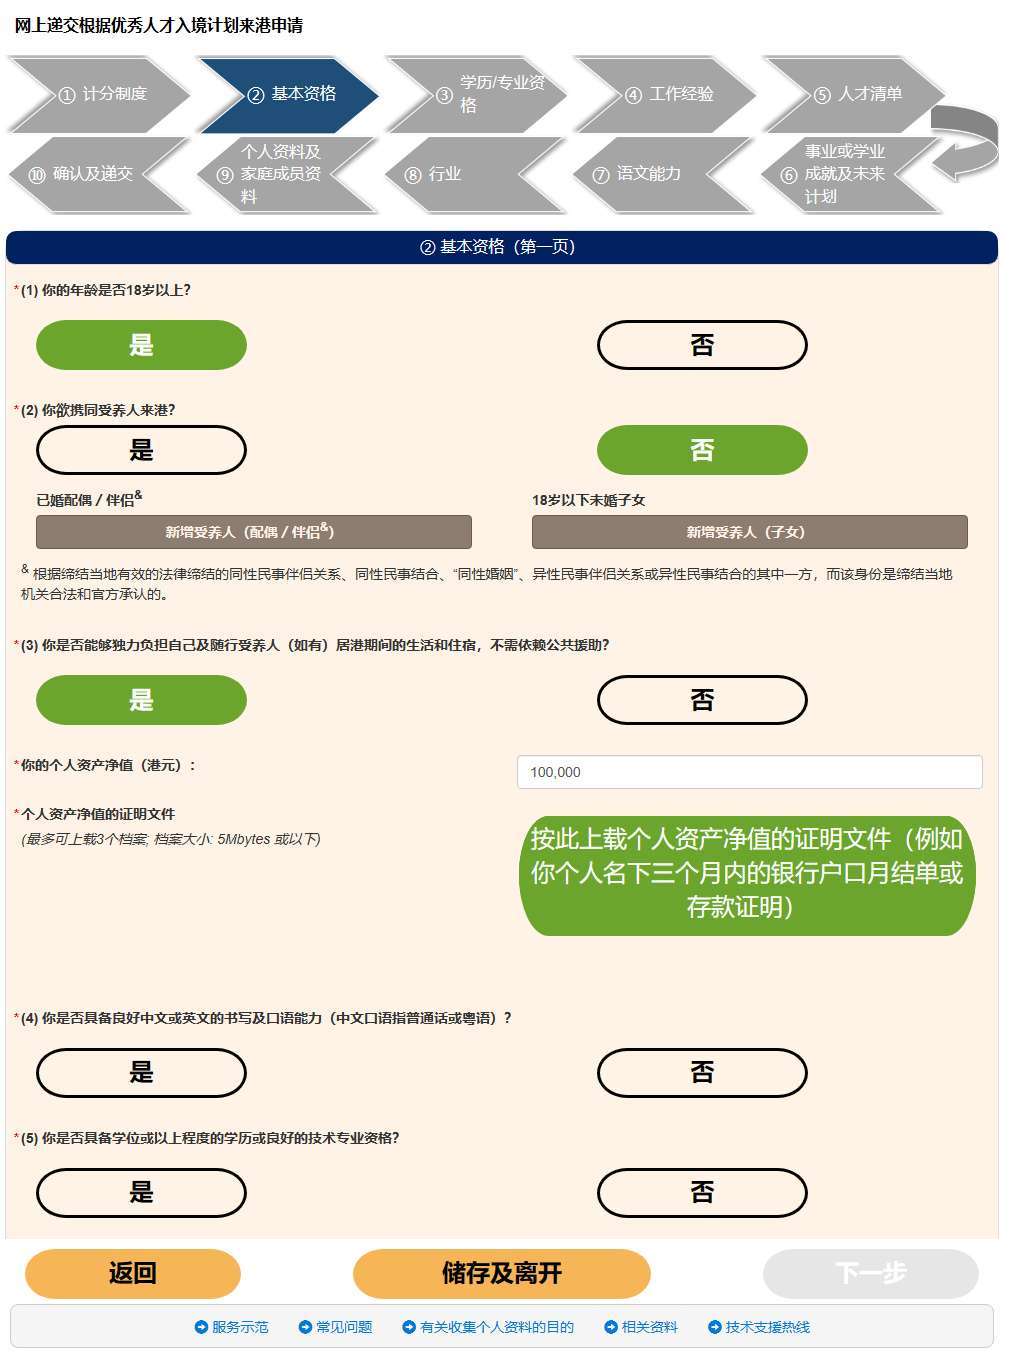 香港优才计划线上申请网址,10个步骤完成申请,附材料清单,注意事项!